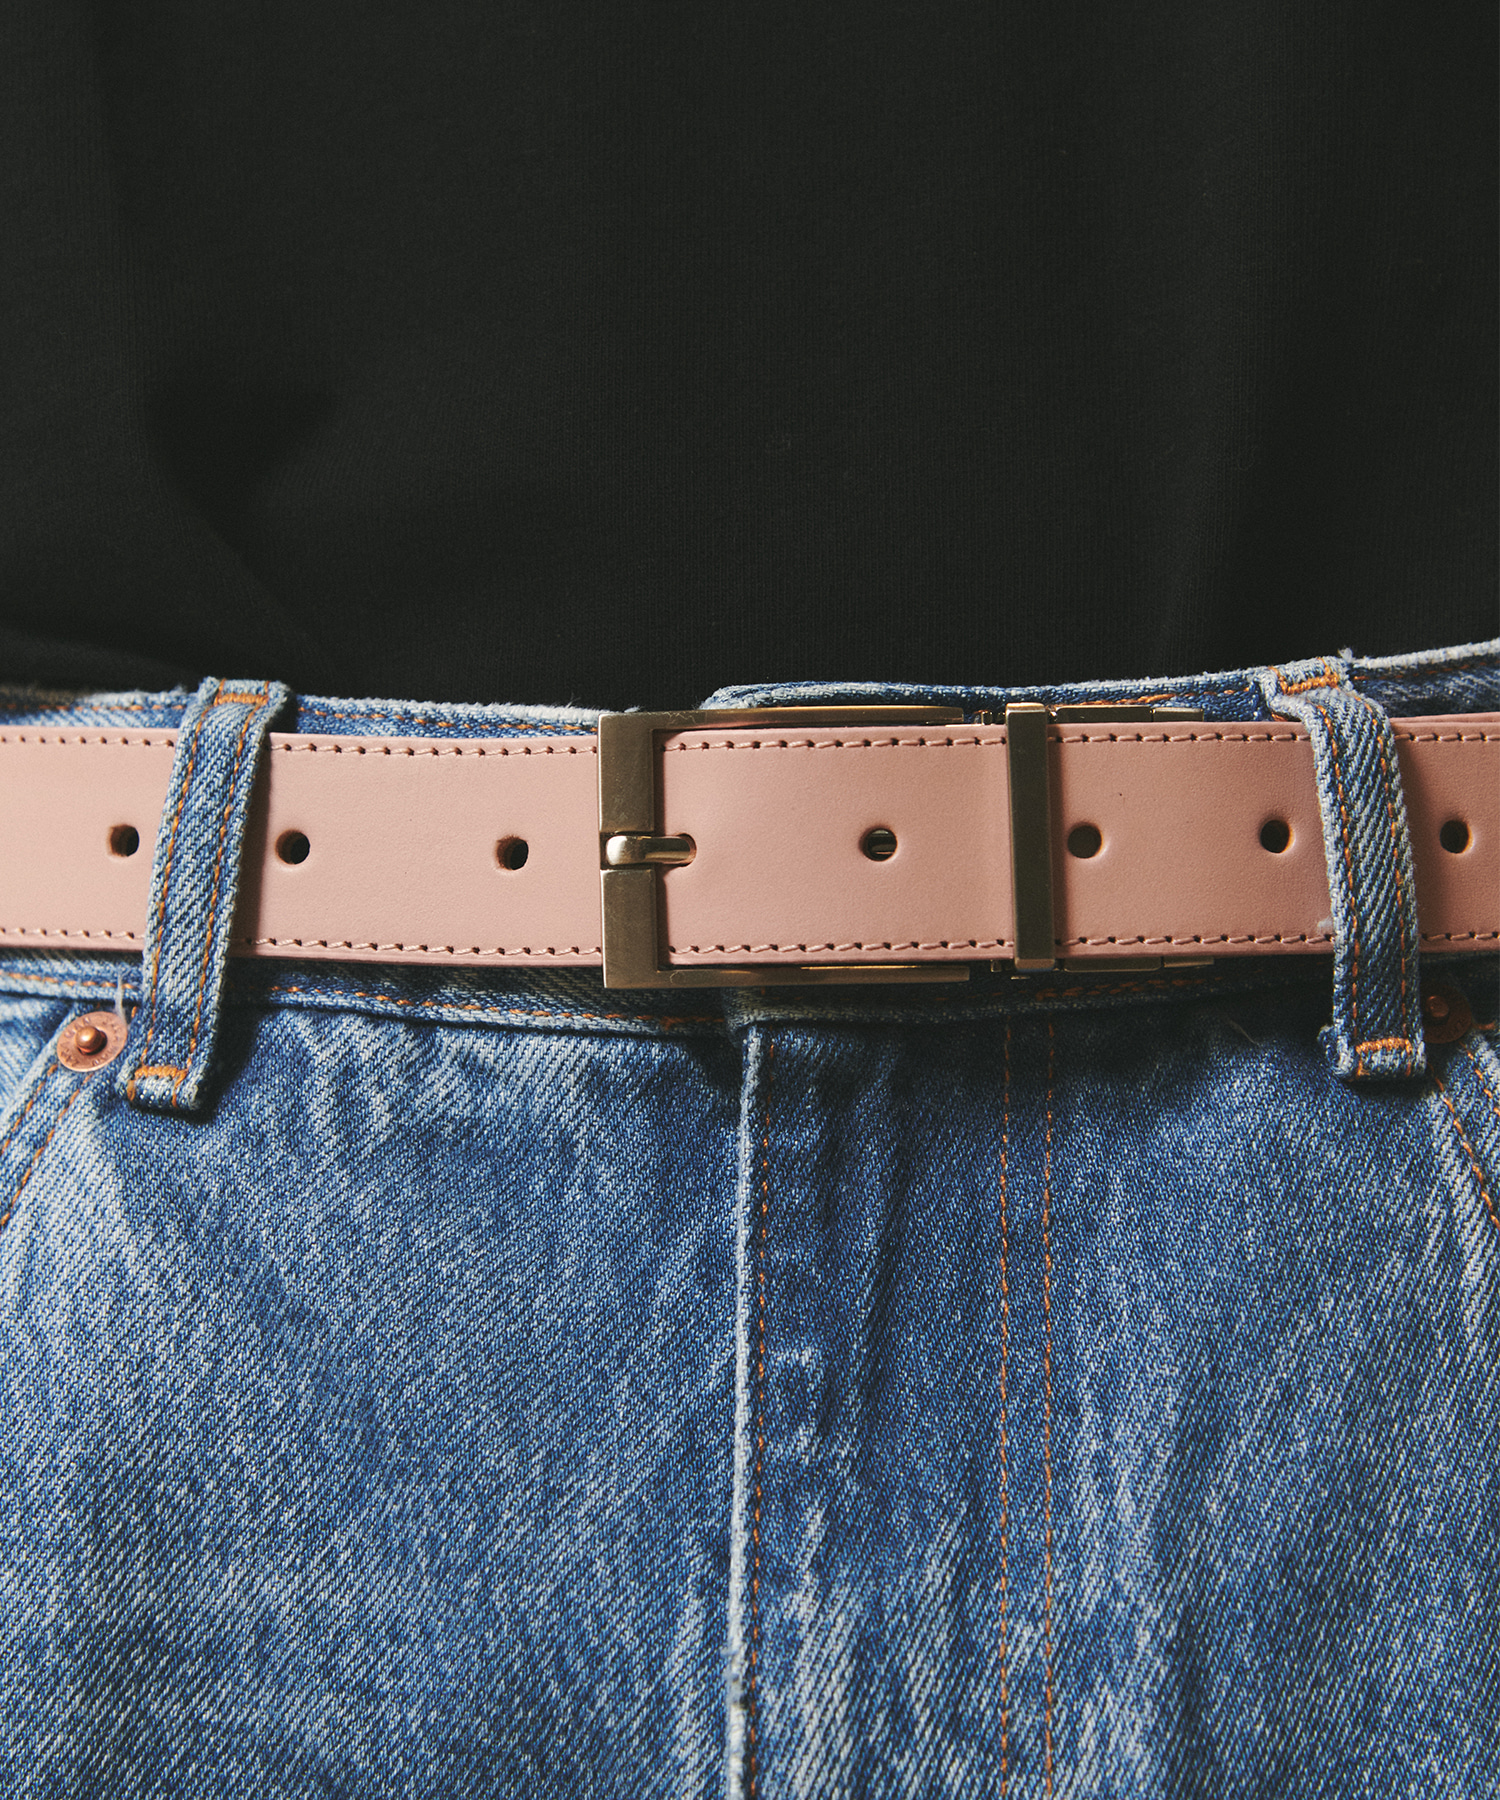 [천연소가죽]Cowhide Reversible Hard Leather Belt BLACK/PINK